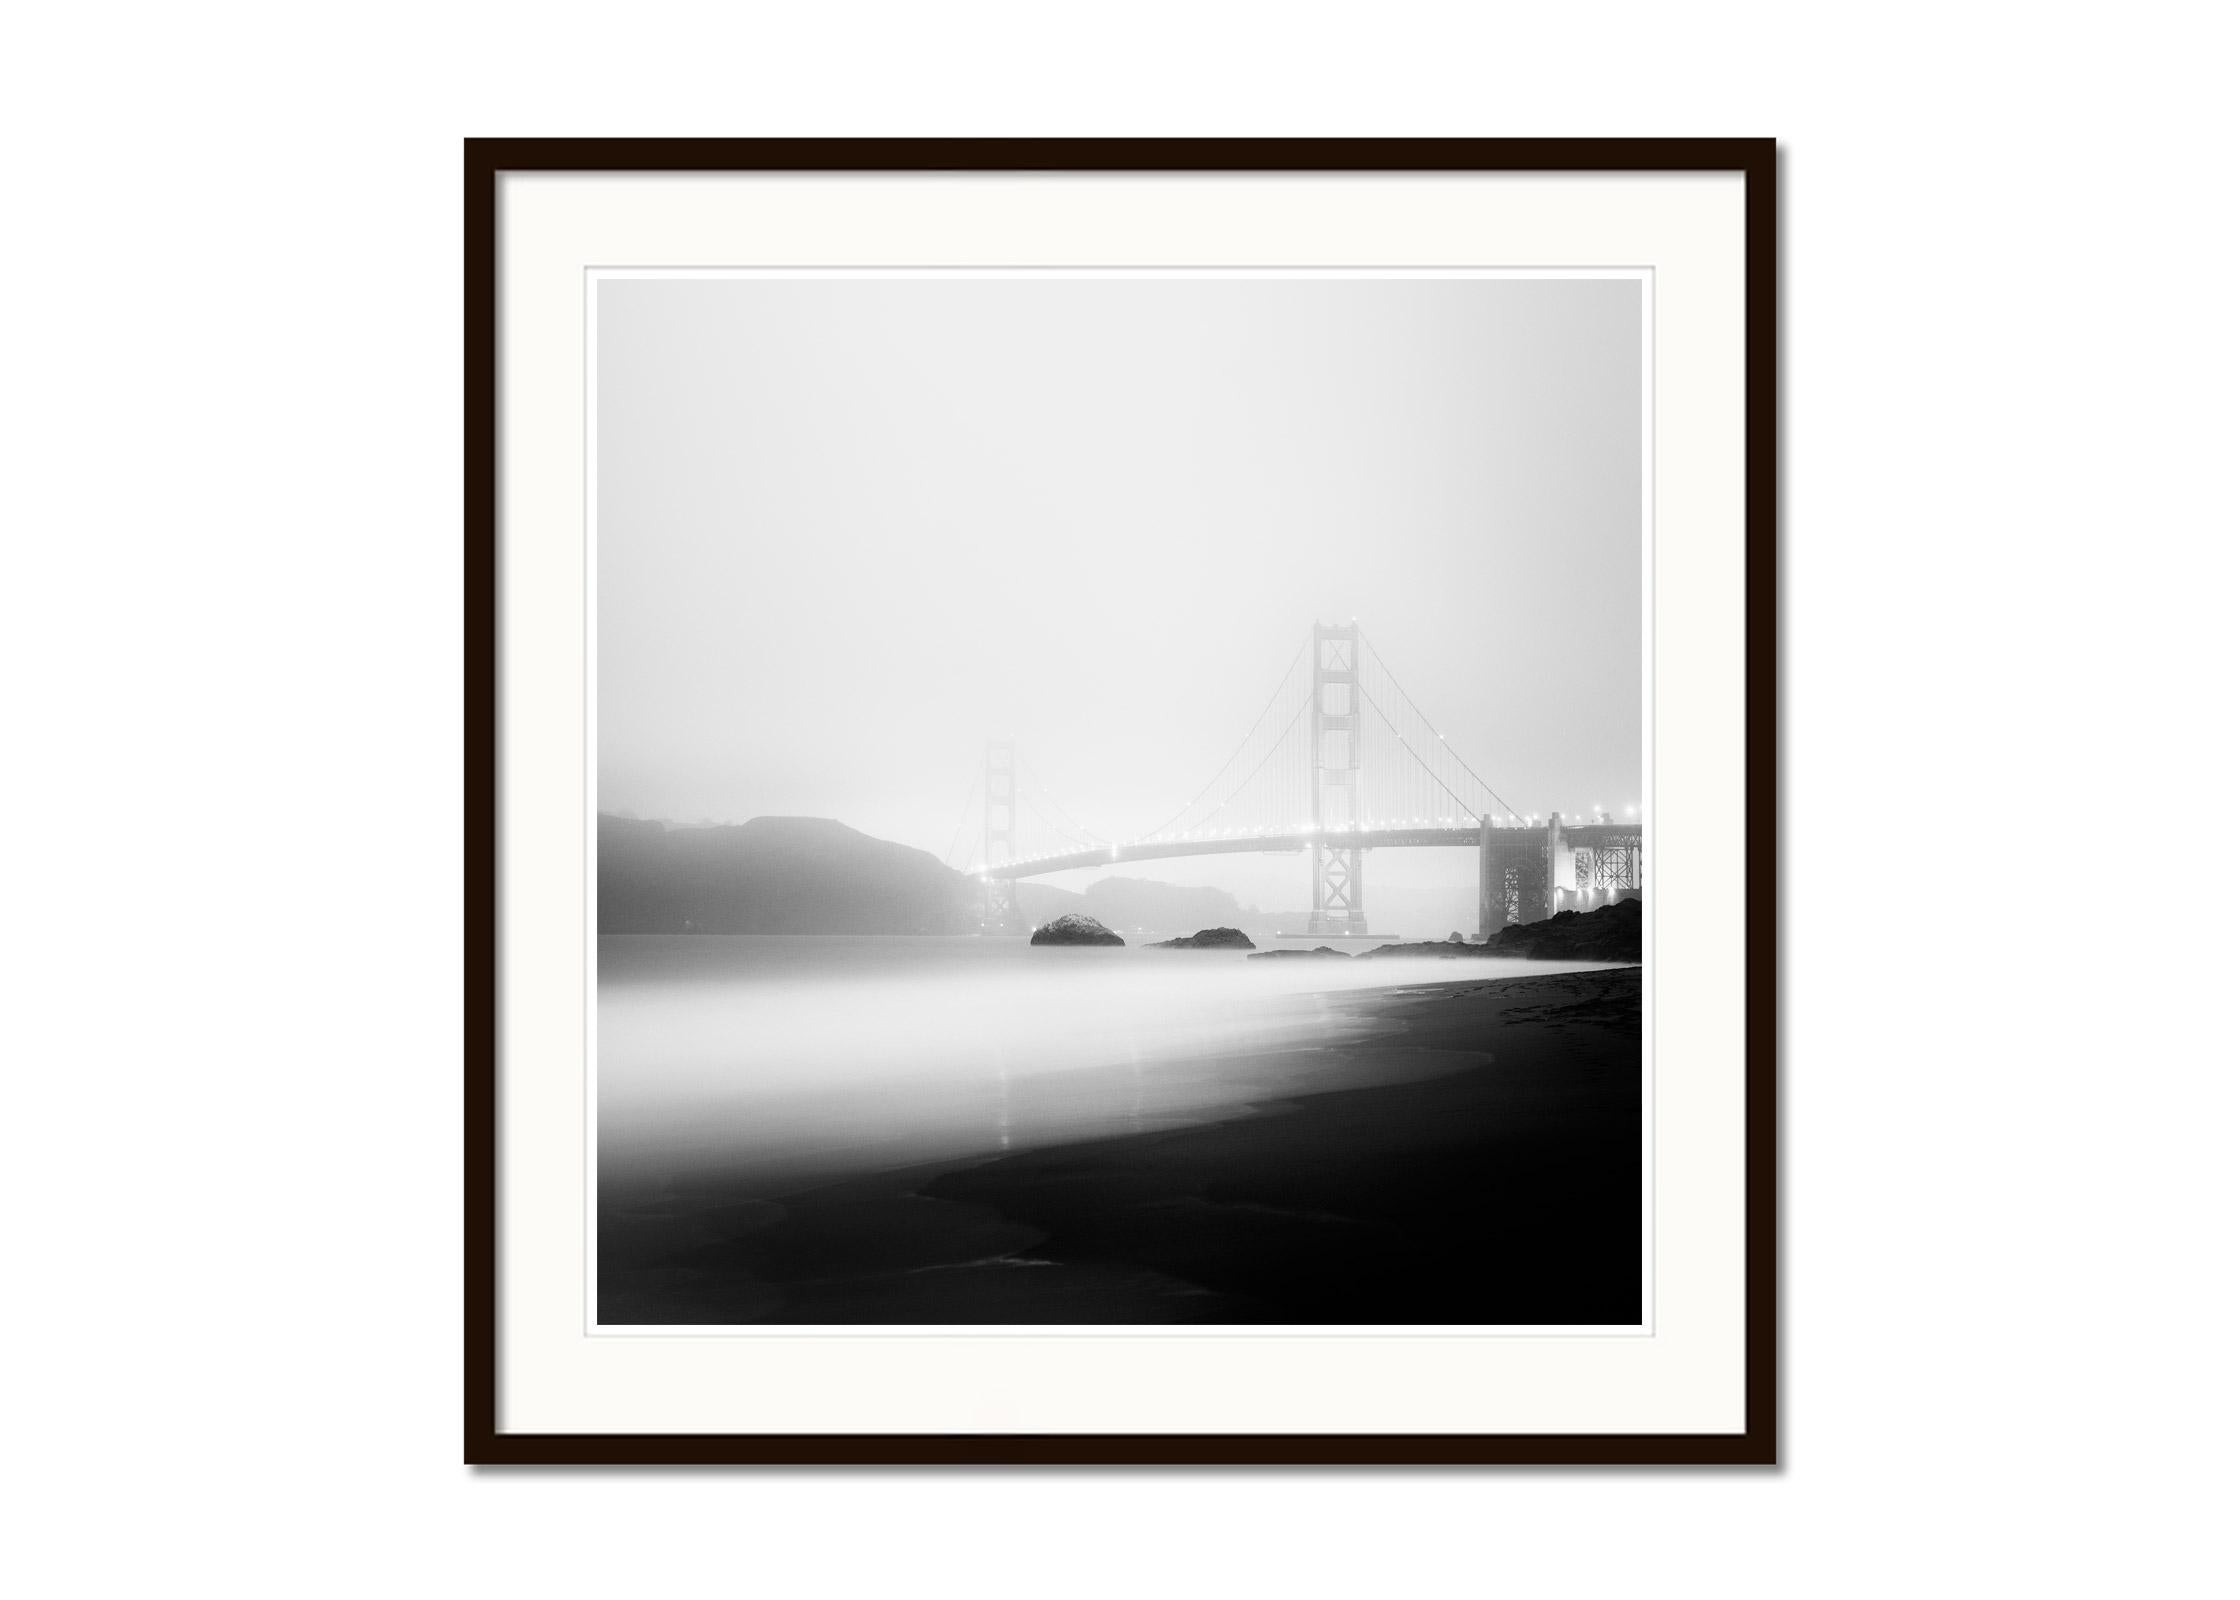 Golden Gate Bridge, Nebel, Nacht, USA, Schwarz-Weiß-Fotografie, Landschaft (Grau), Landscape Photograph, von Gerald Berghammer